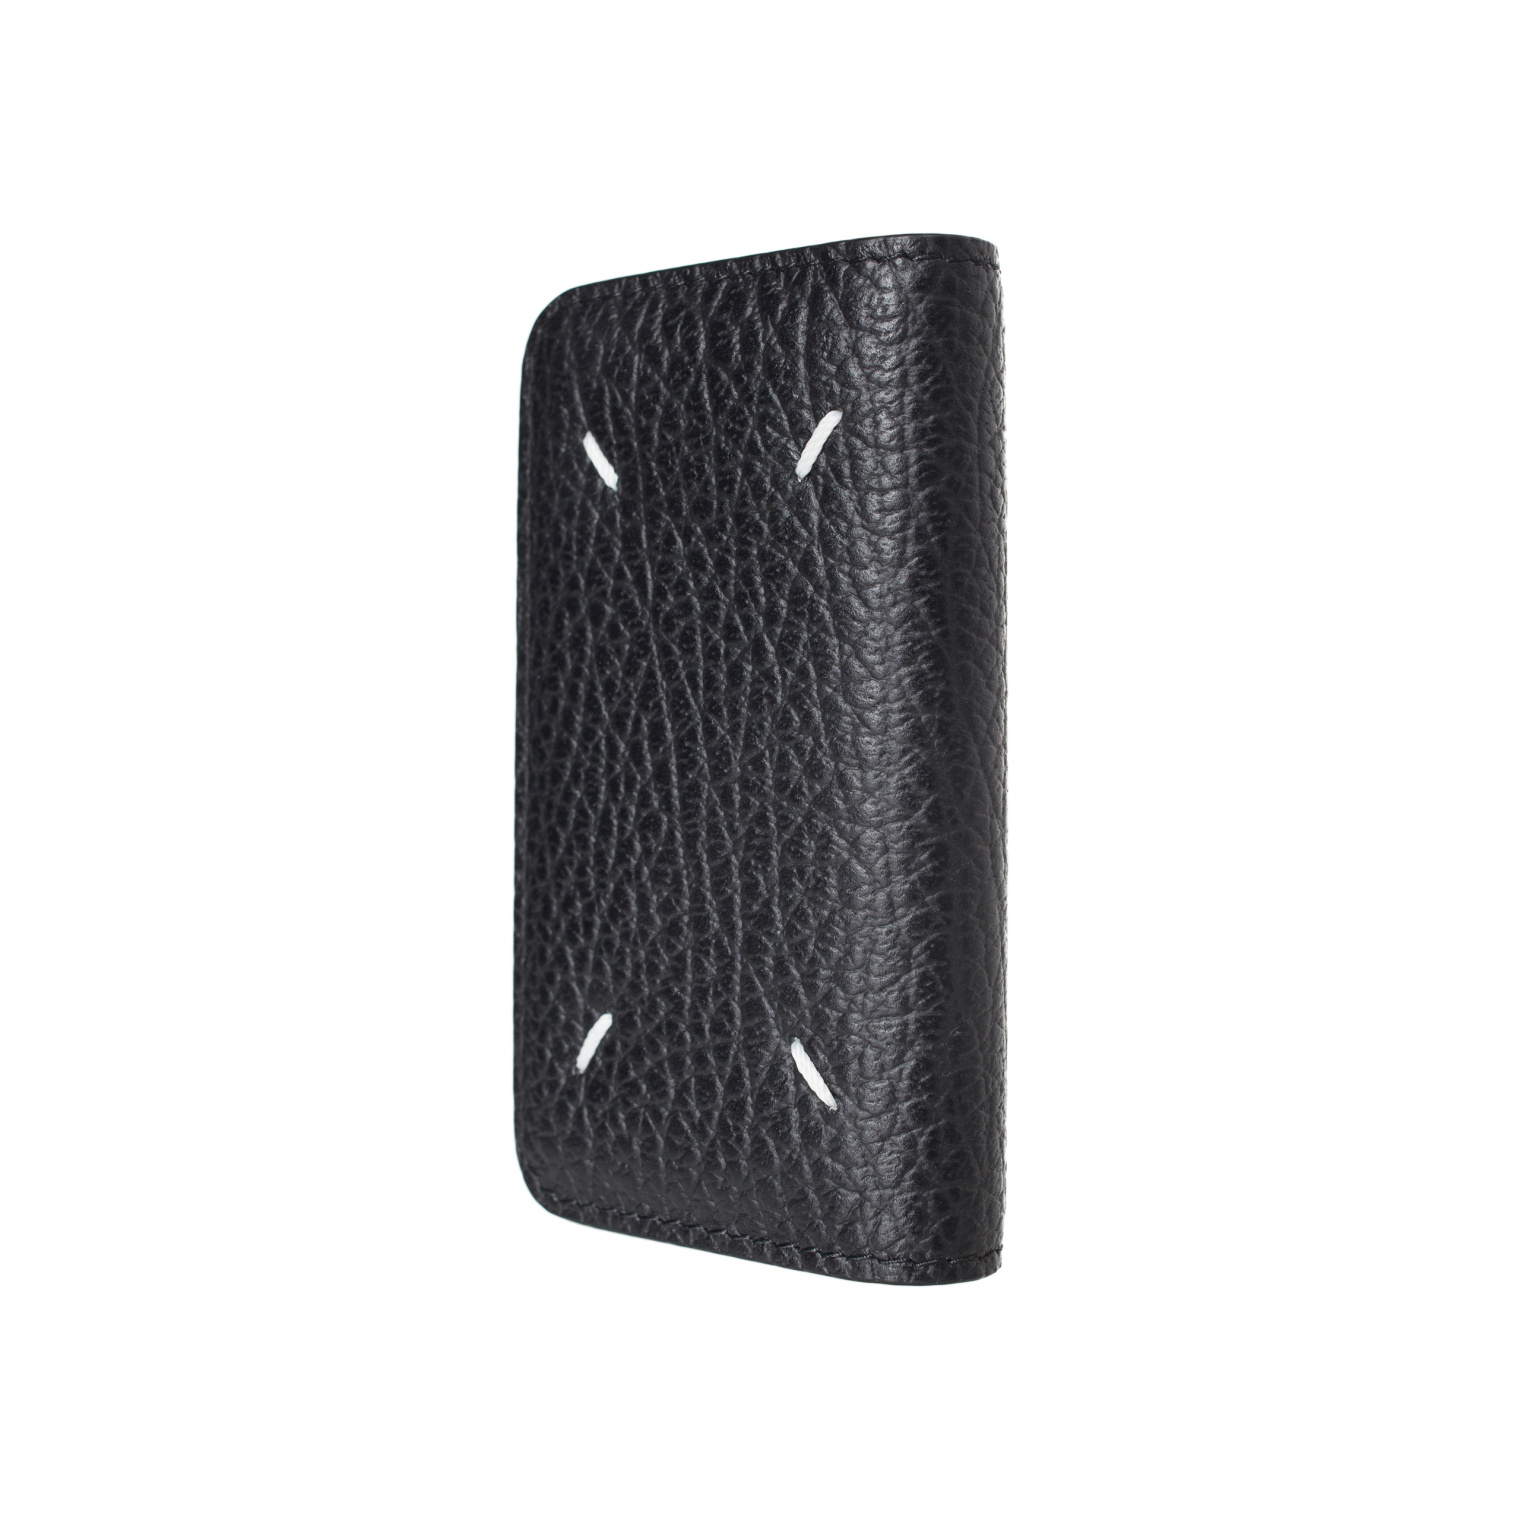 Maison Margiela Black leather key case